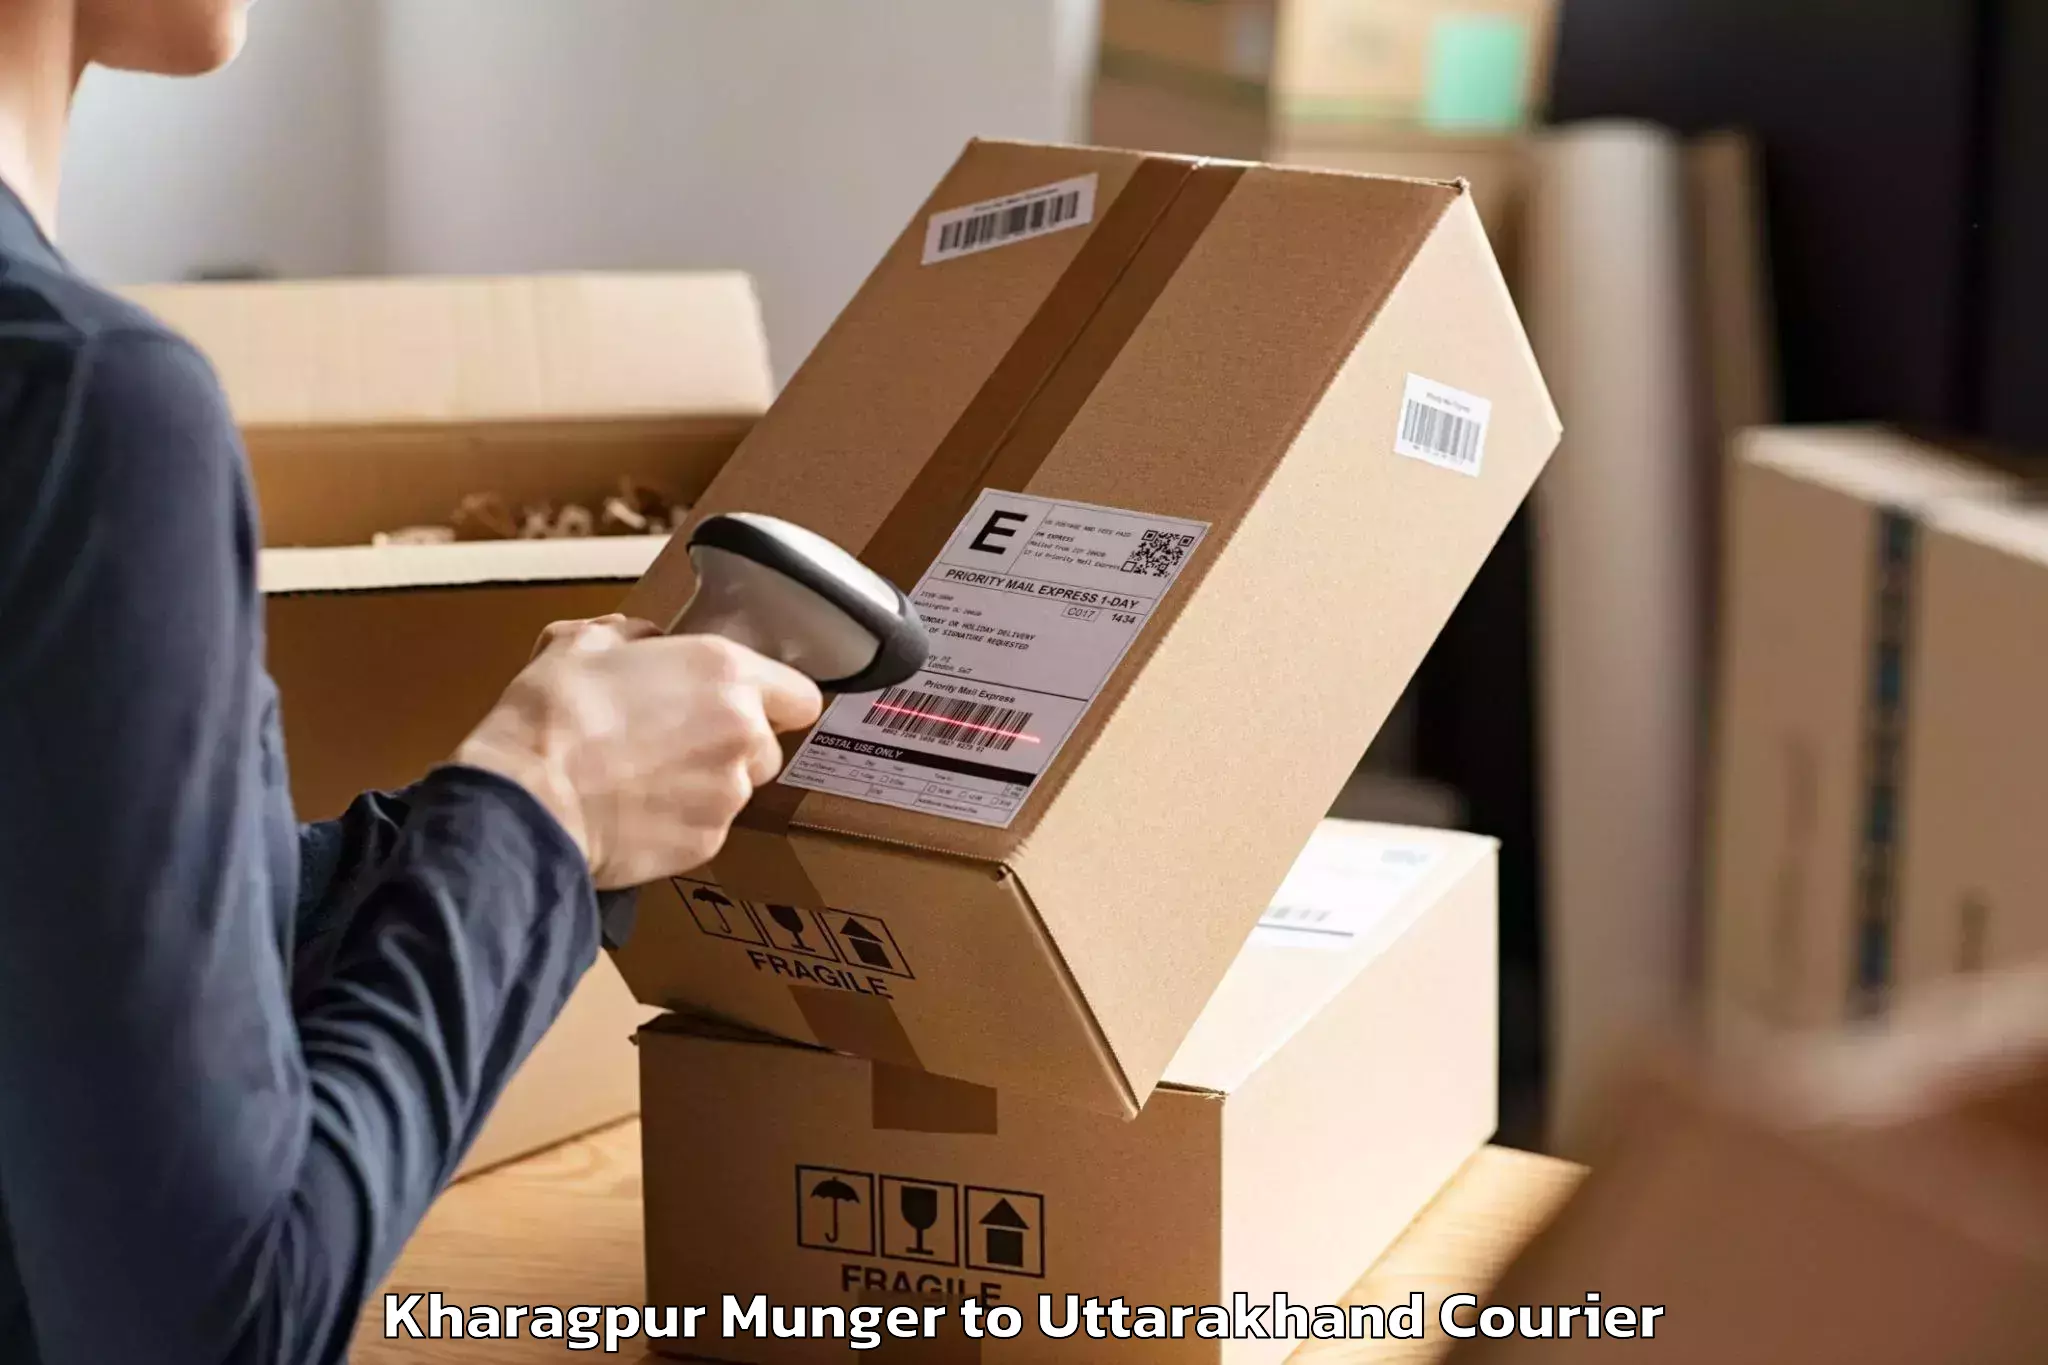 Furniture transport experts Kharagpur Munger to Khatima